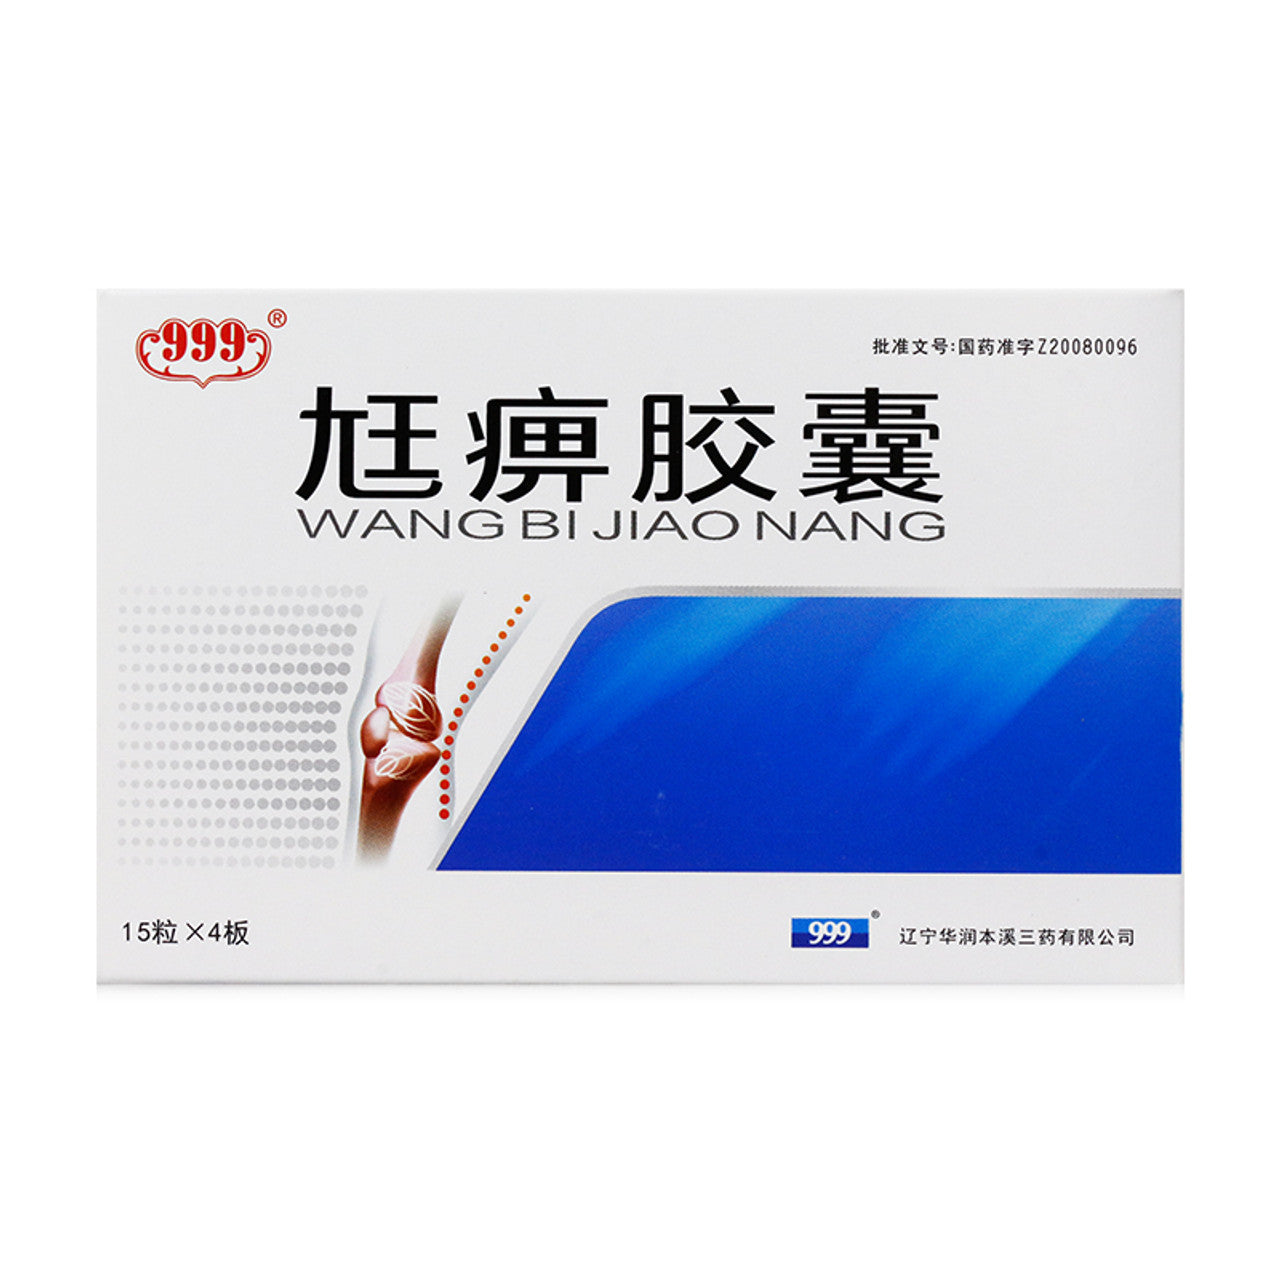 Herbal Supplement Wangbi Jiaonang / Wangbi Capsules / Wang Bi Jiao Nang / Wang Bi Capsules